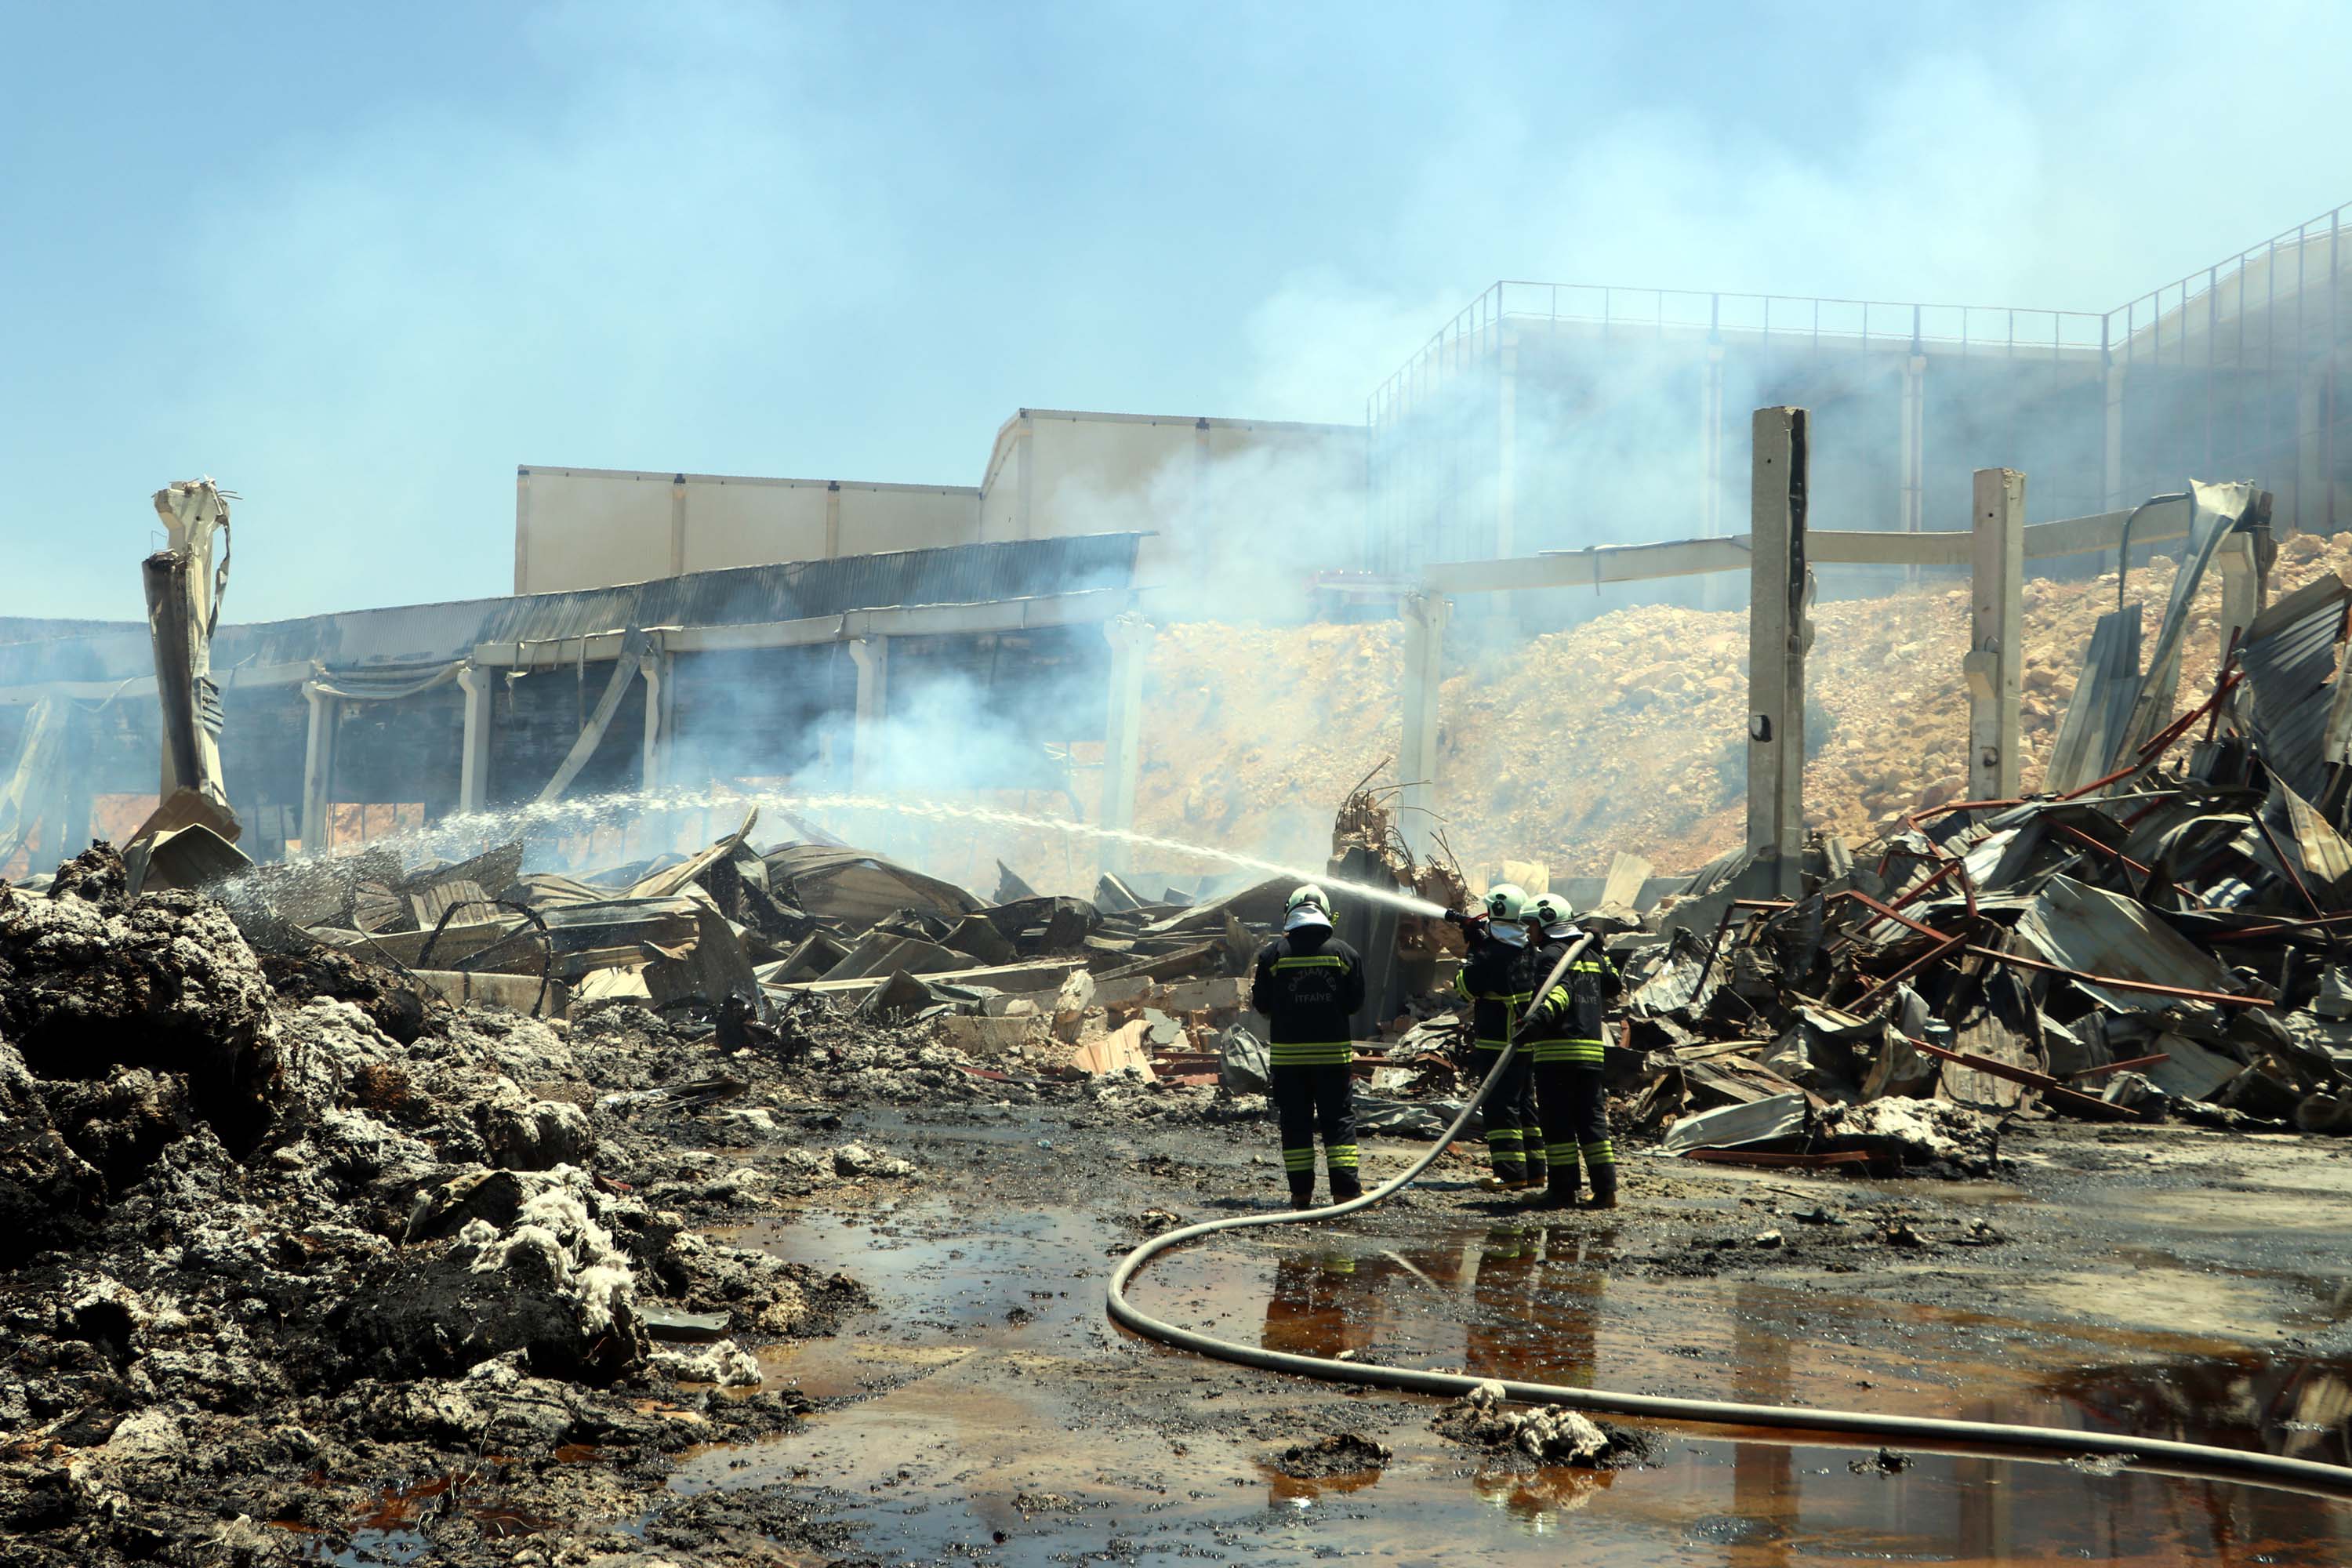 Gaziantep'te yanan fabrikada maddi zarar çok büyük